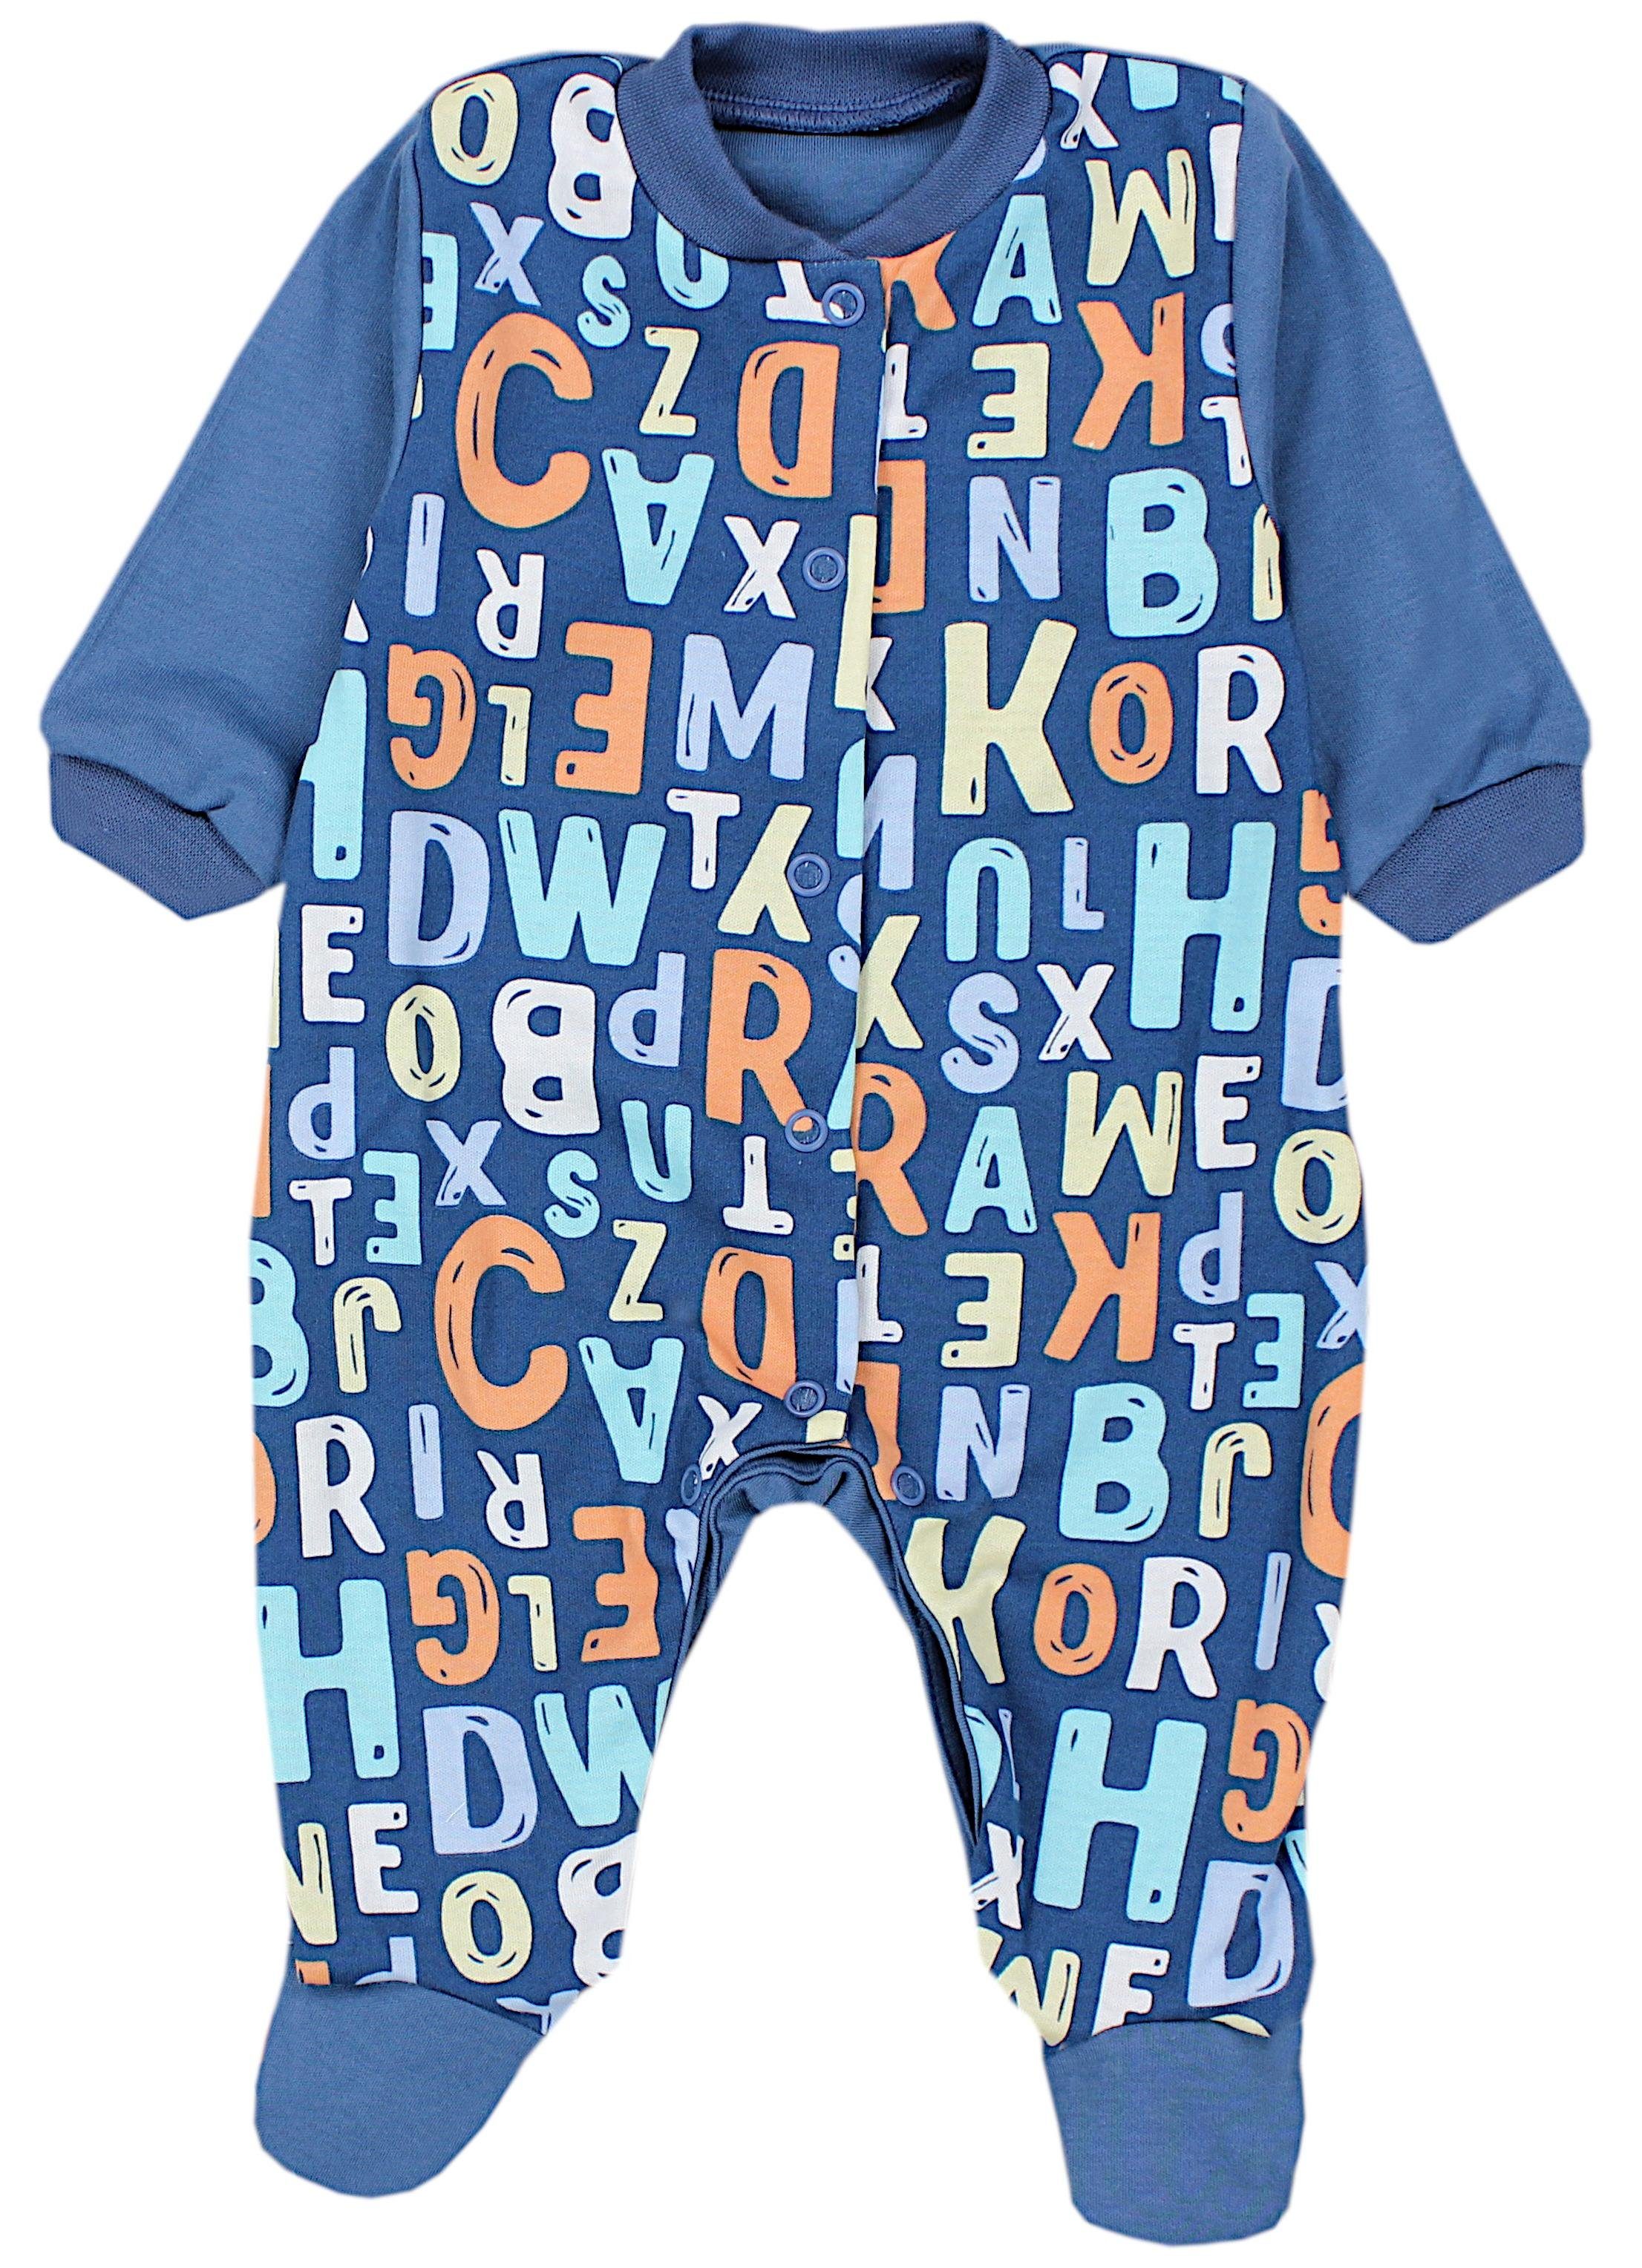 Pack TupTam Schlafanzug mit Schlafoverall Baby Jungen Fuß Schlafstrampler Farbenmix 5 Langarm 3er